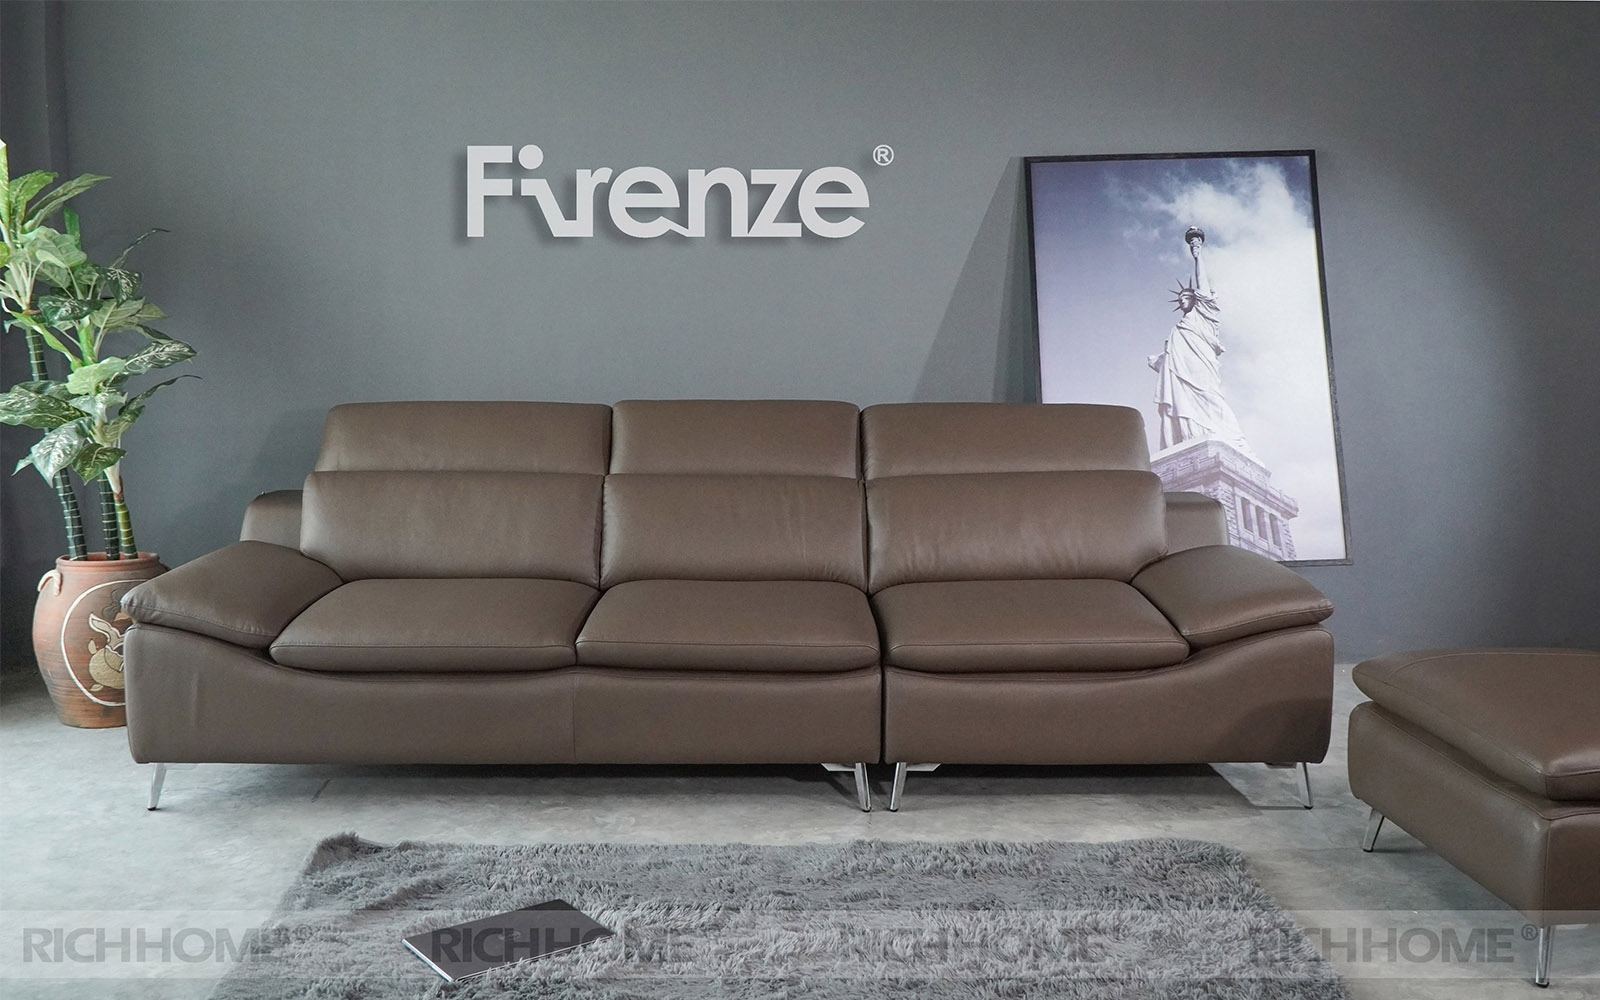 Thiết kế đẹp của mẫu sofa văng dài trên thị trường - Ảnh 2